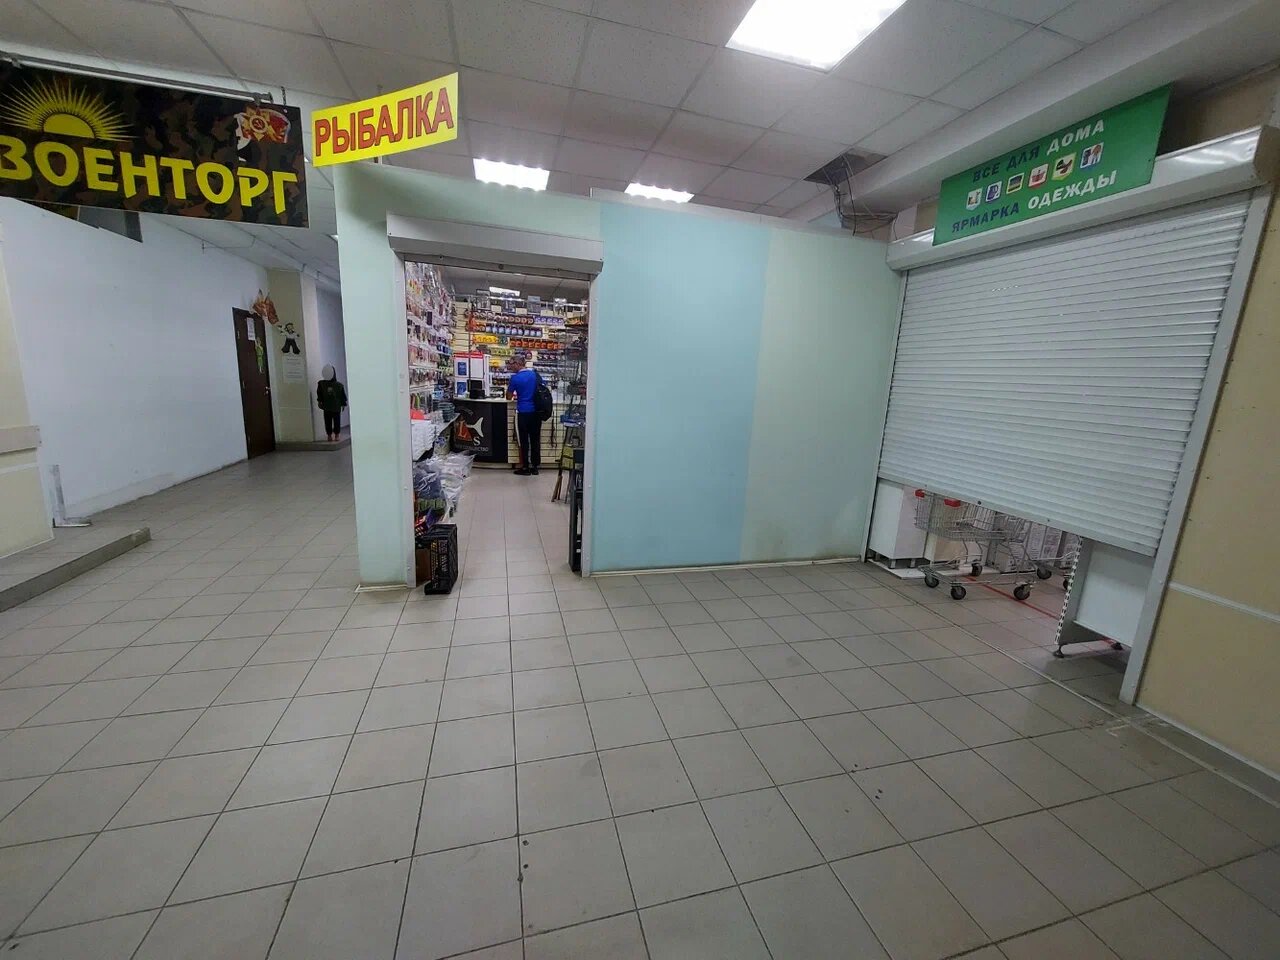 Вход в магазин "Рыболовная демократия" на 3-м Почтовом отделении в Люберцах